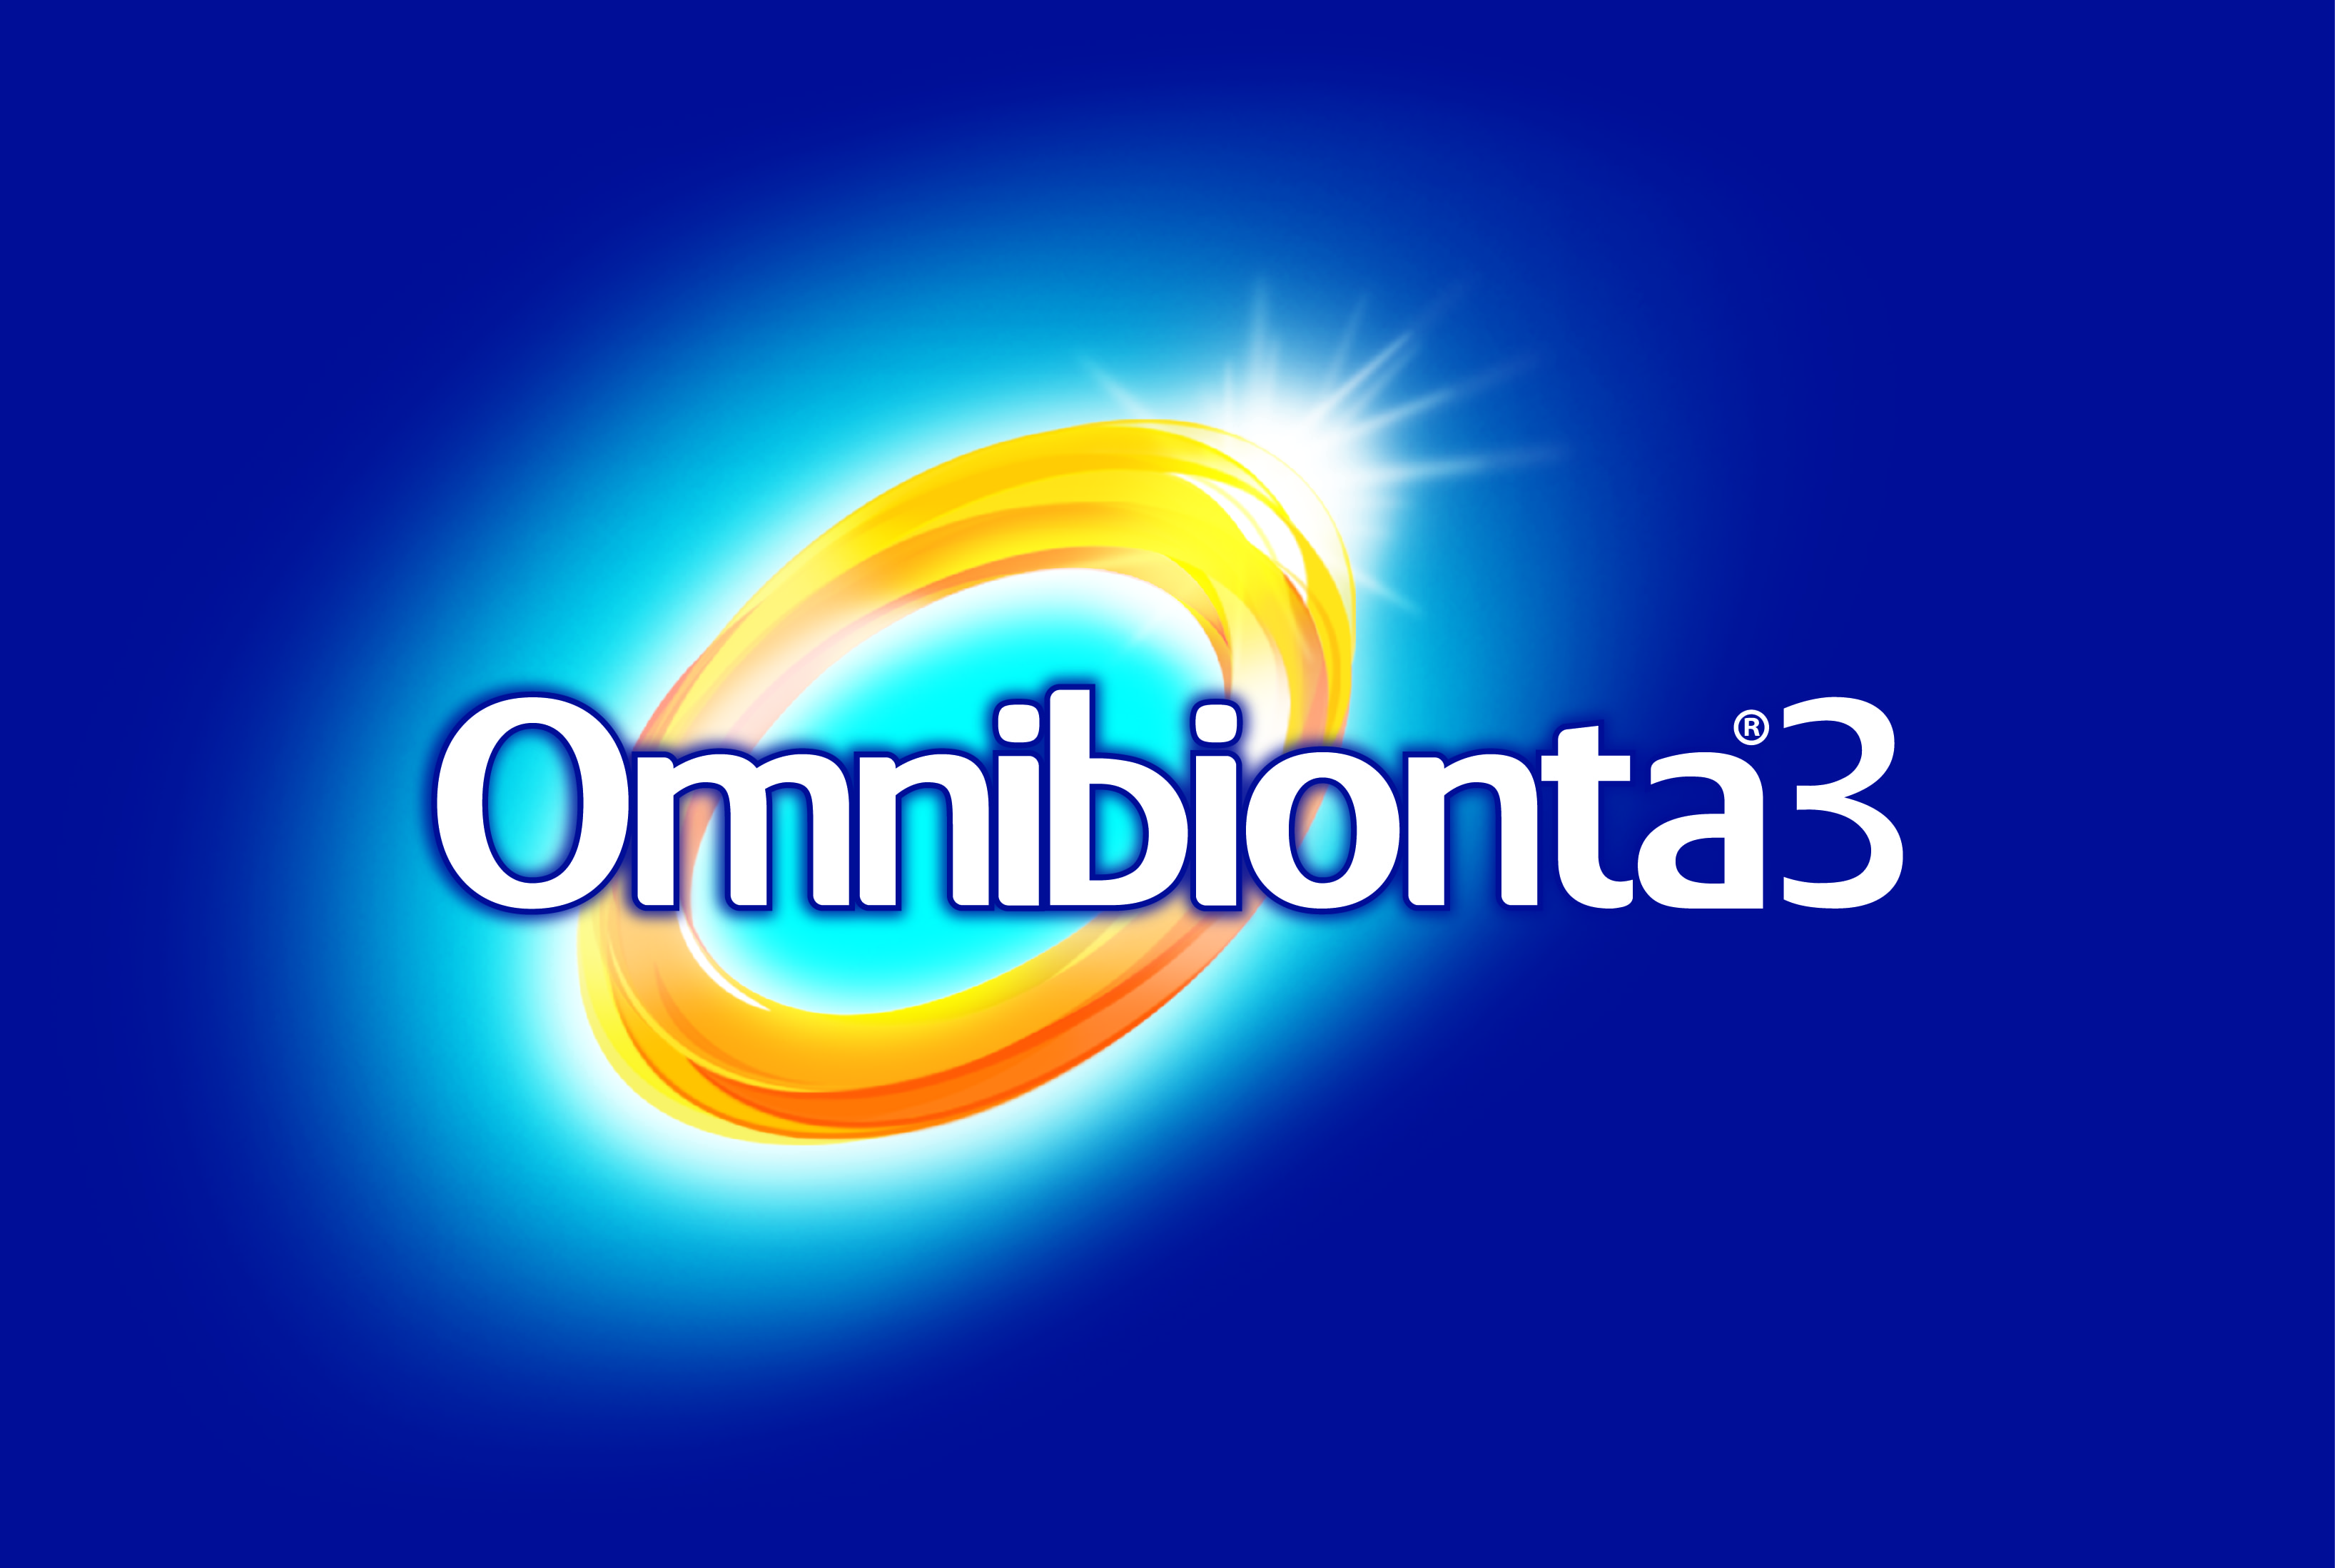 Omnibionta3 Logo